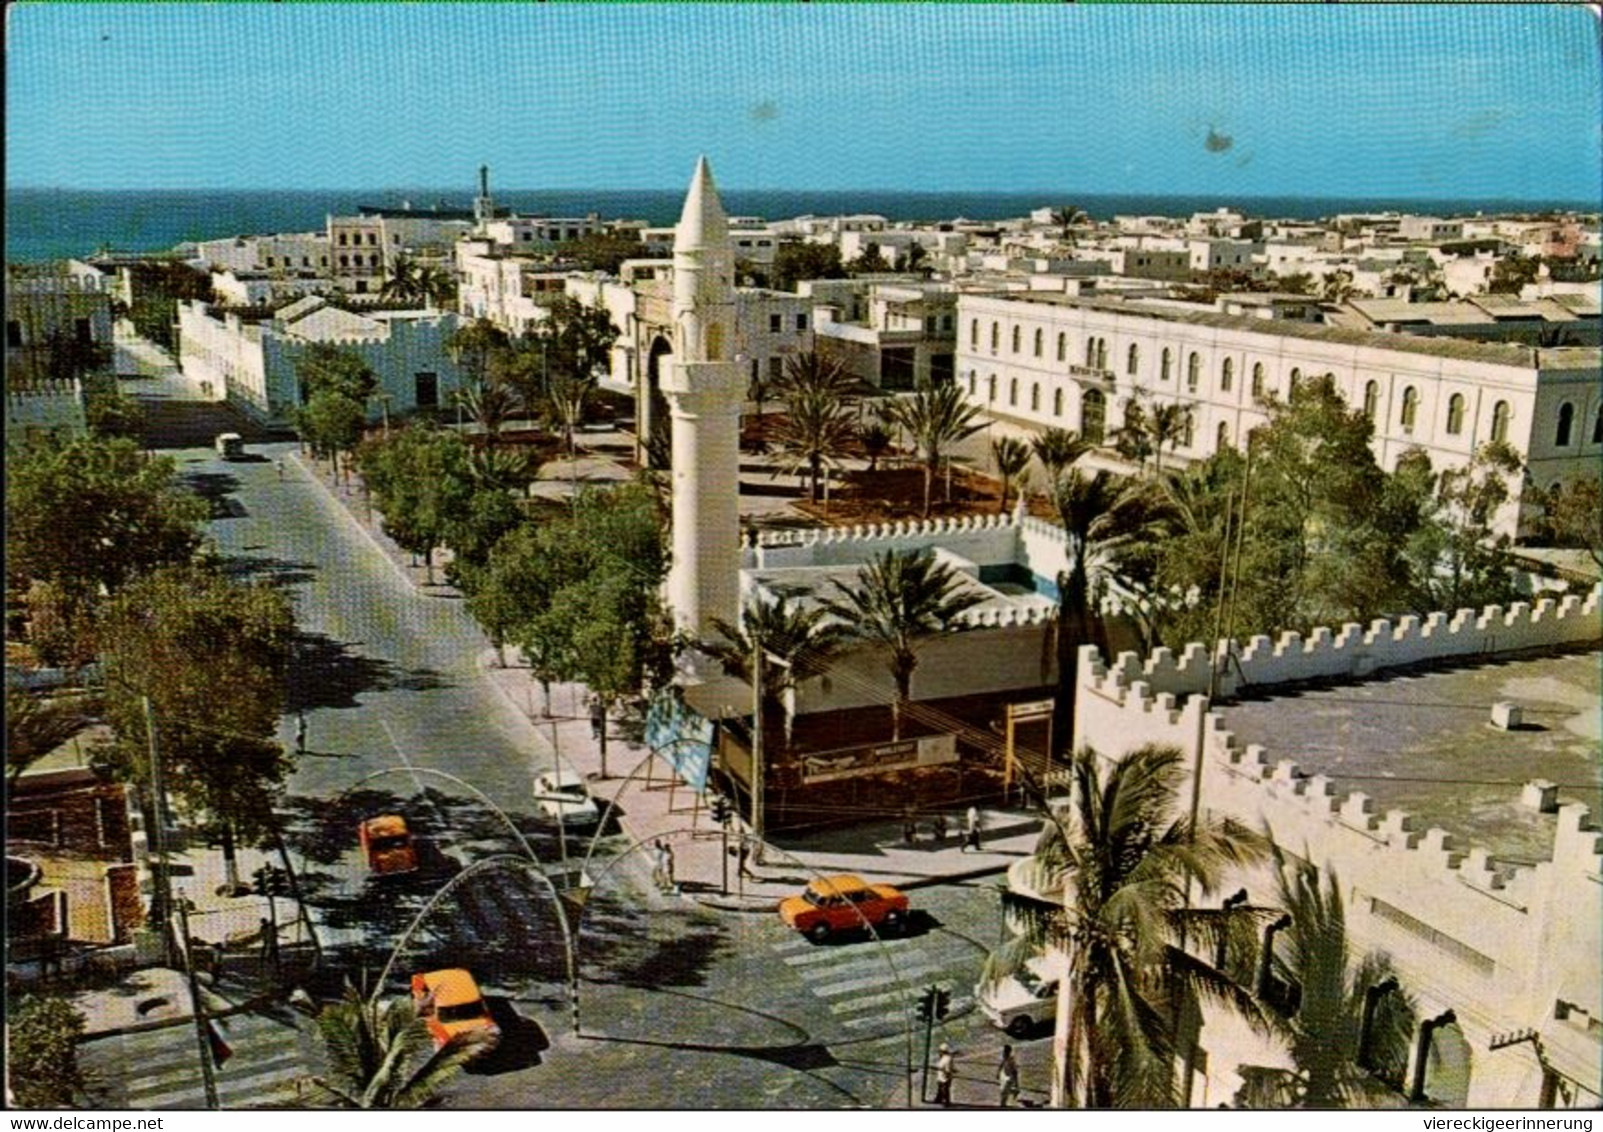 ! Moderne Ansichtskarte Aus Mogadischu, Moschee, Somalia, 1979, DDR, Berlin, Botschaftspost ? - Somalia